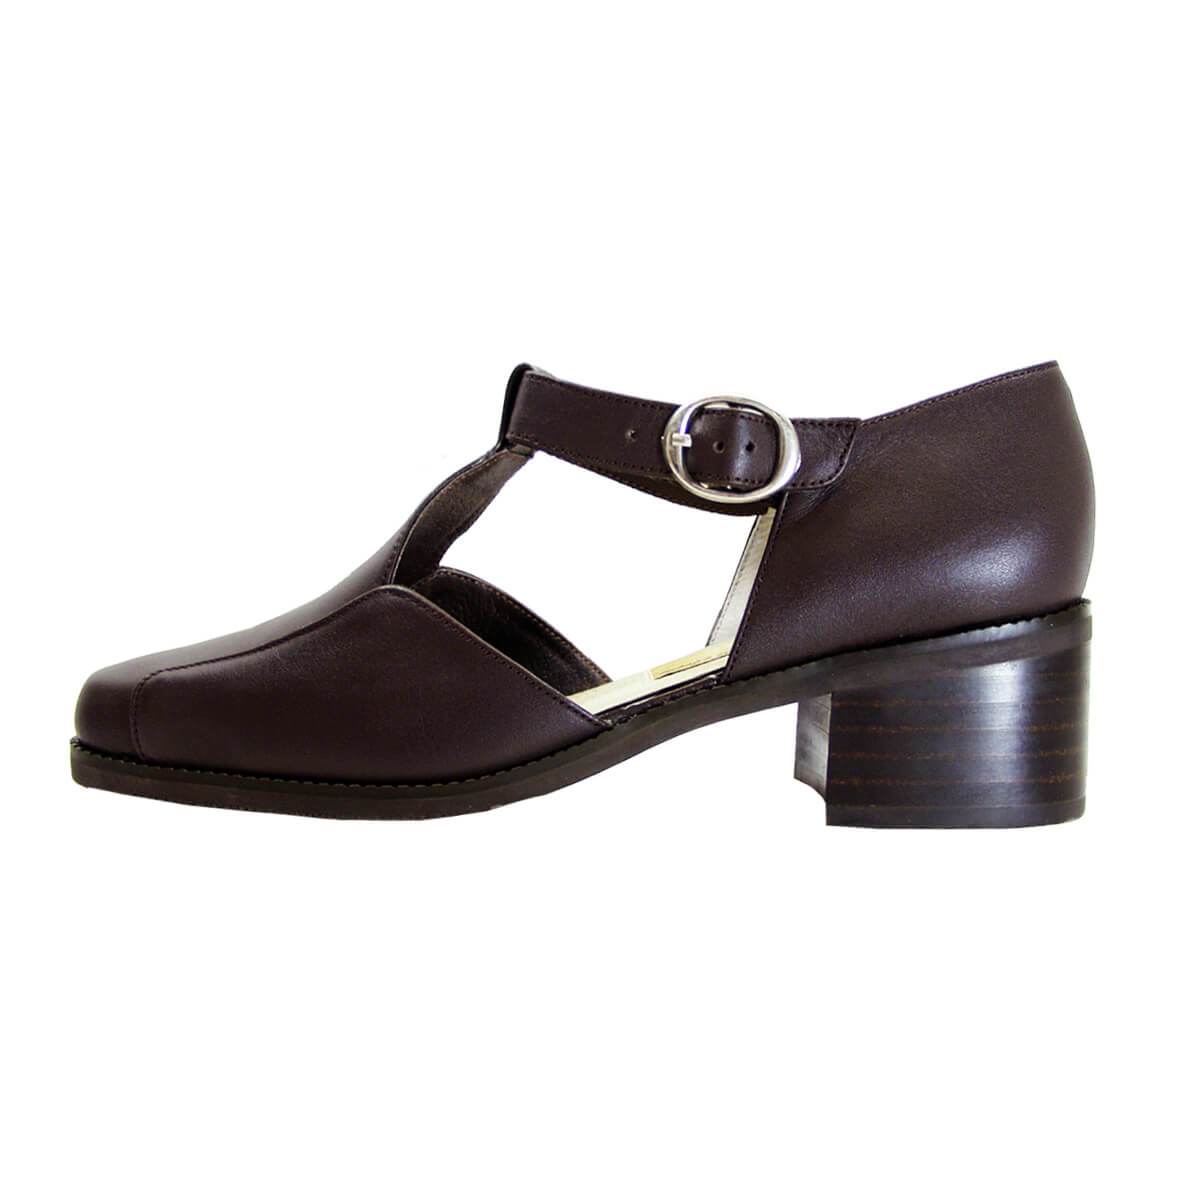 PEERAGE Sheba Women's Wide Width T-Strap Leather Shoes